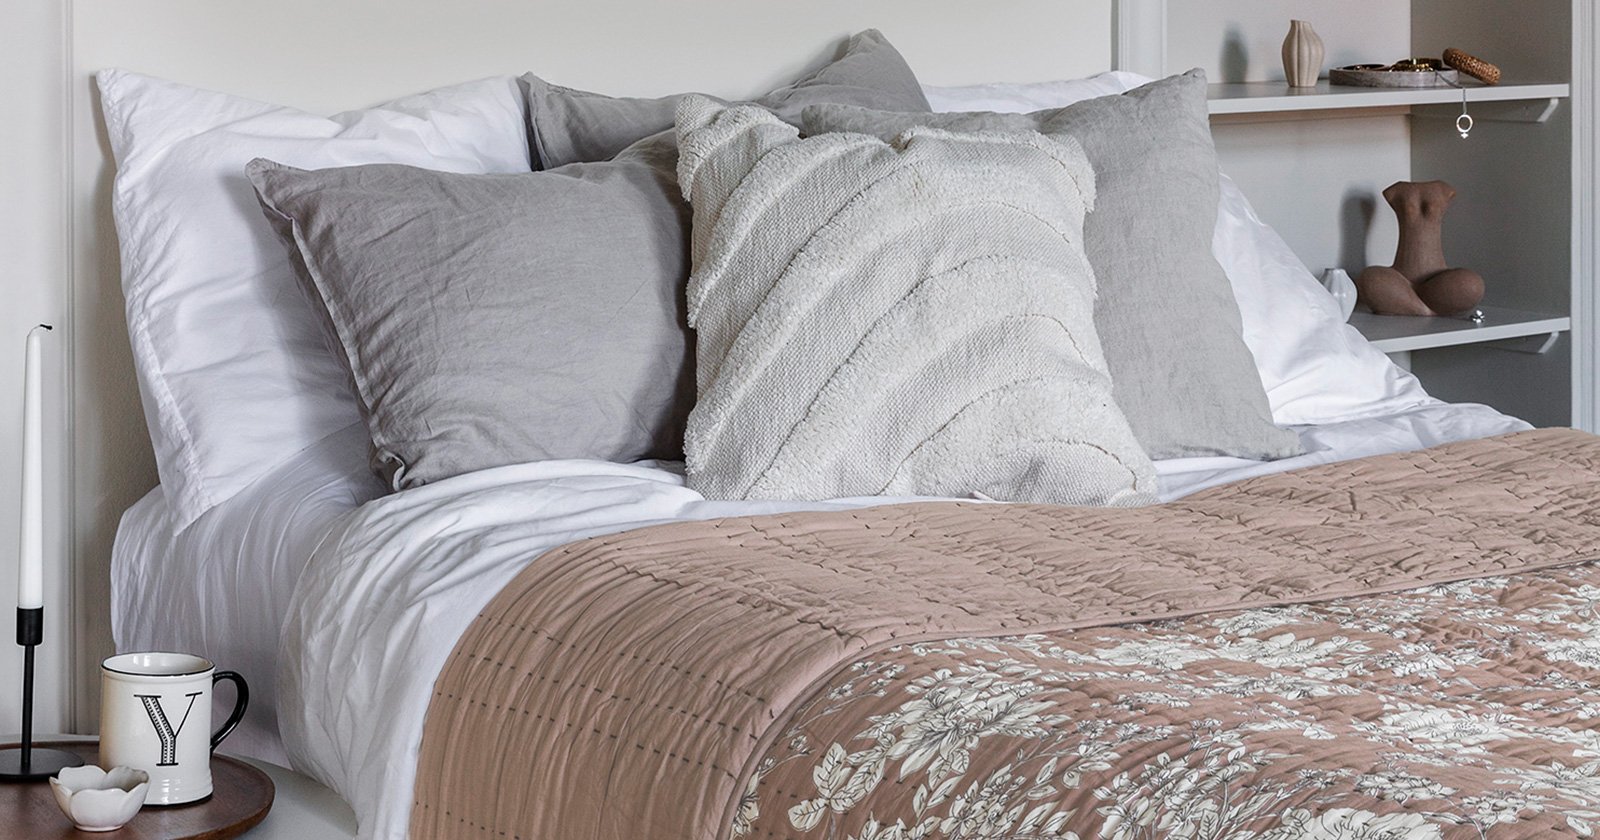 En bäddad säng med kuddar i ljusa färger. På sängen ligger ett beigerosa mönstrat överkast från Indiska